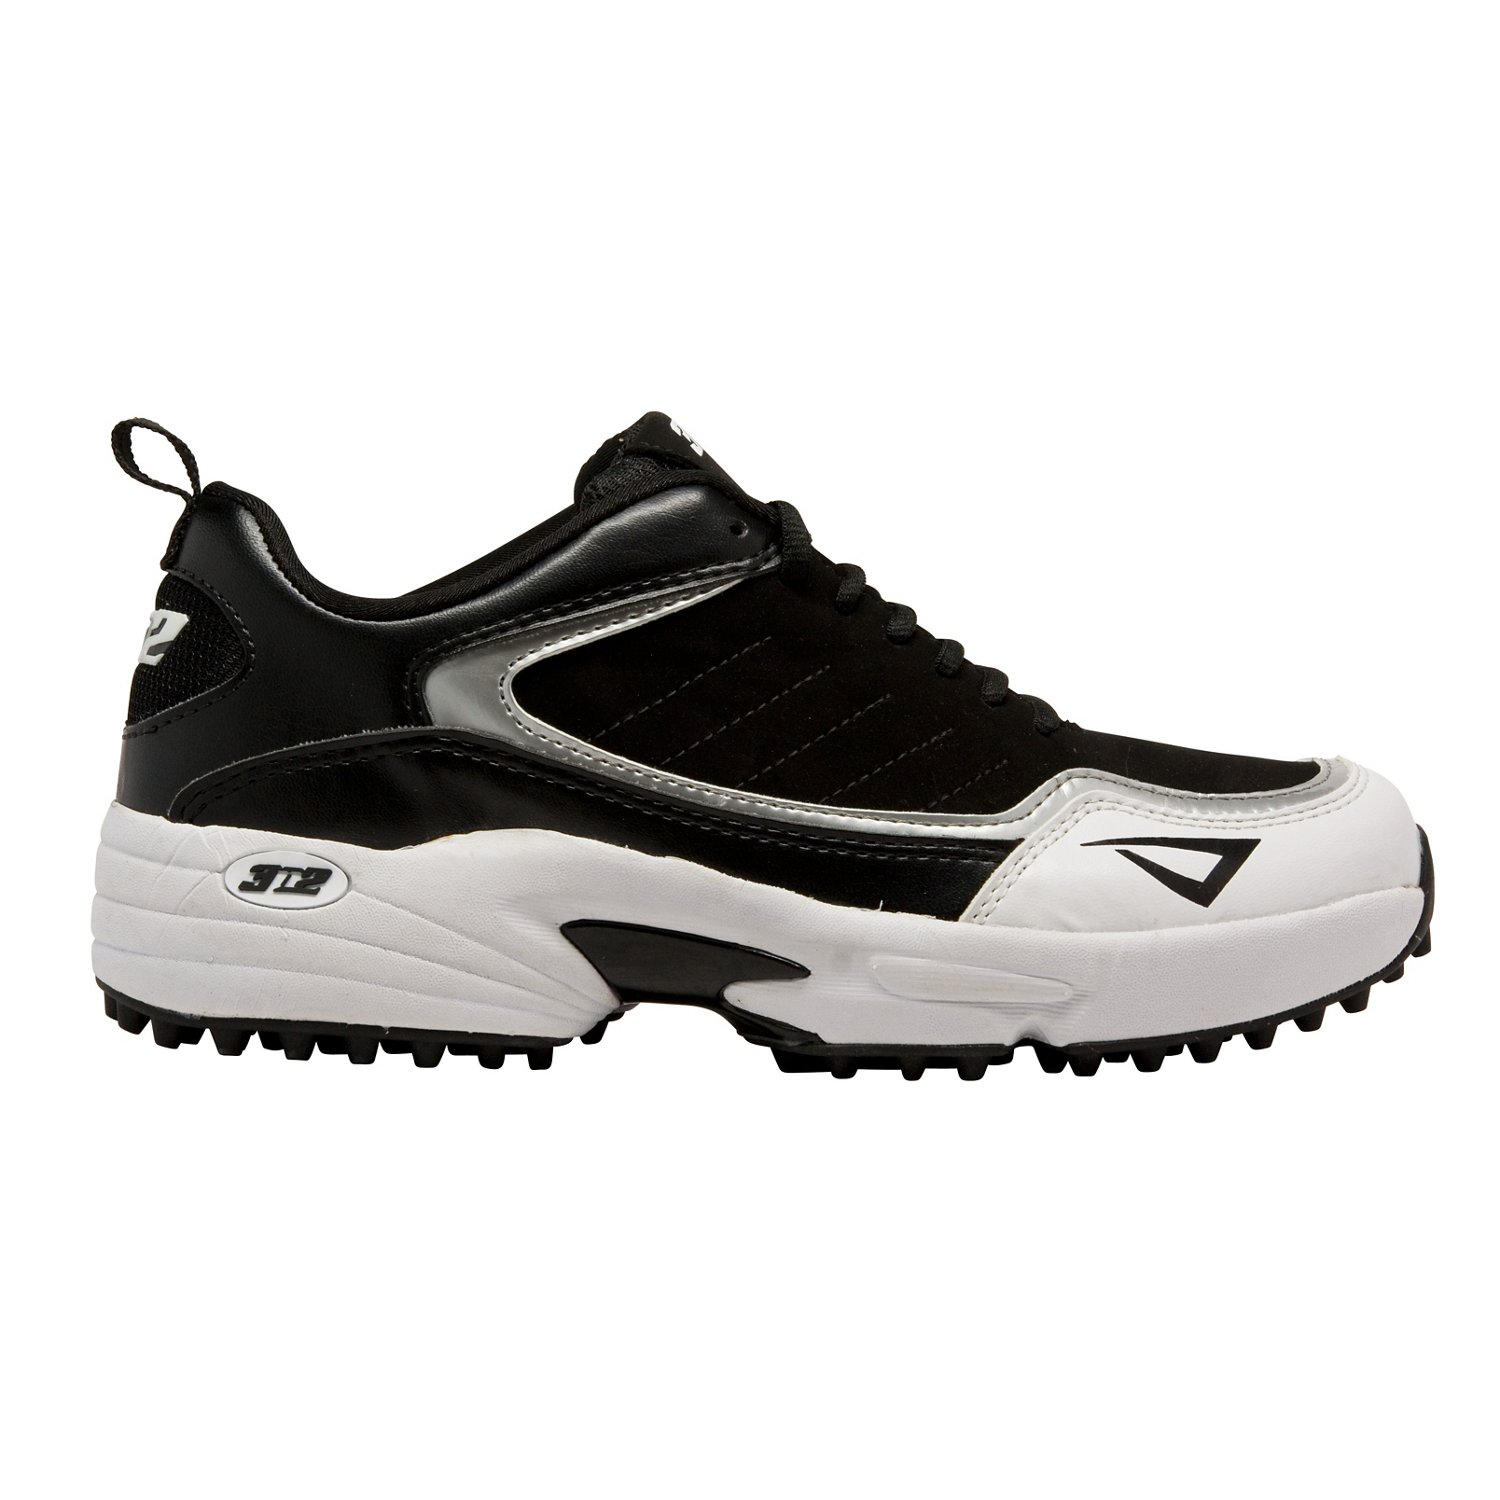 3N2 Men's Viper Turf Baseball Shoes | Free Shipping at Academy